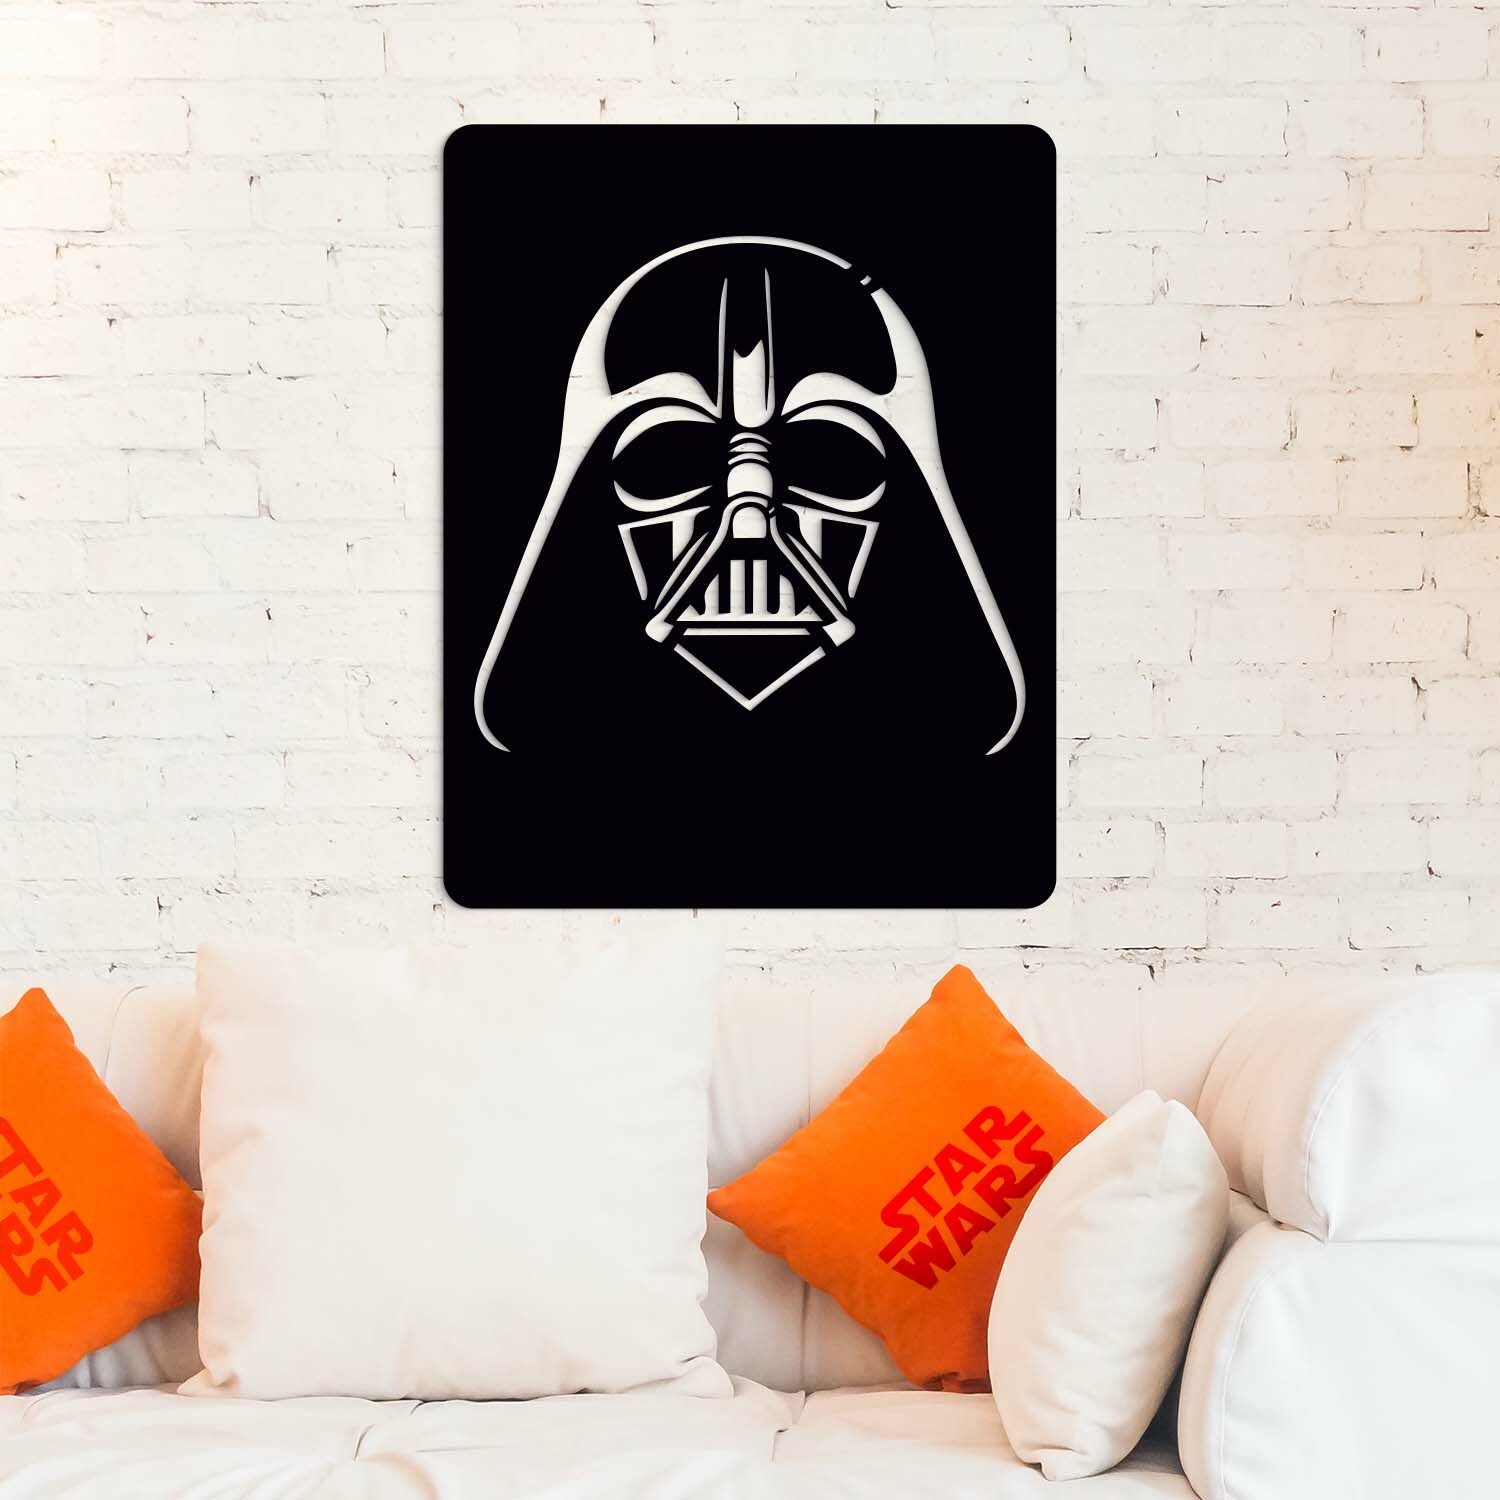 Dřevěný obraz Star Wars - Darth Vader